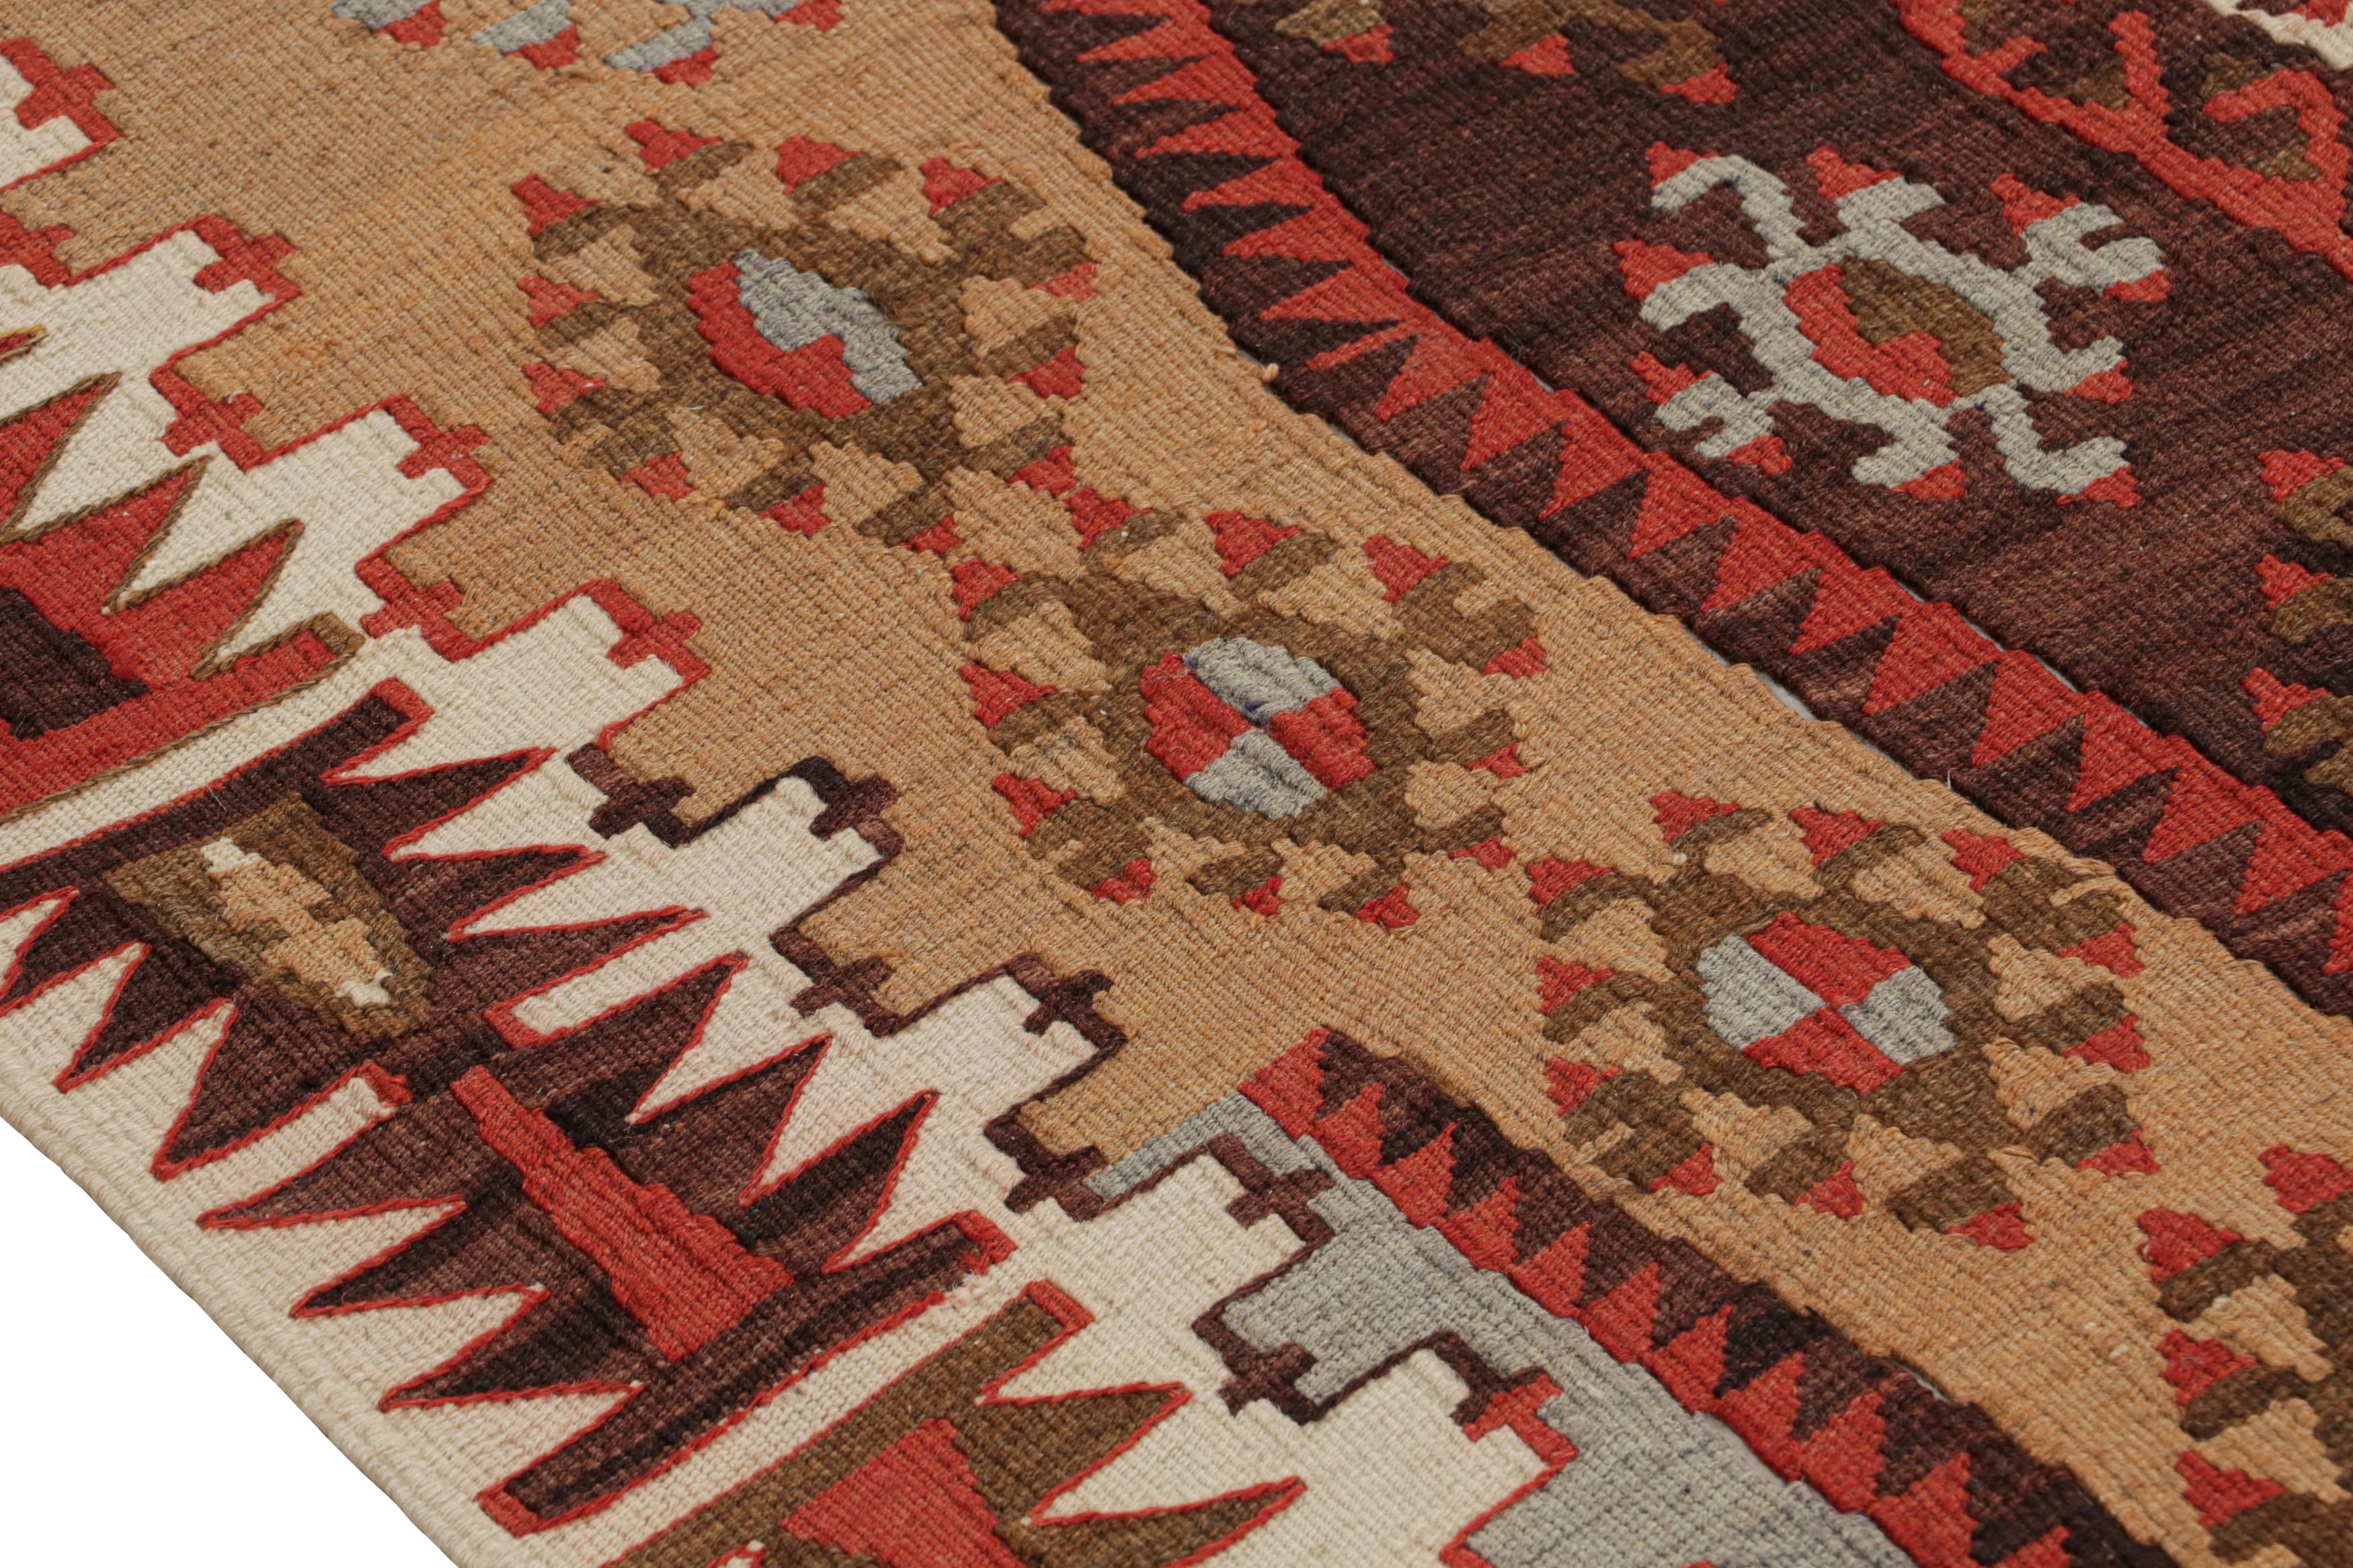 Turkish Vintage Geometric Beige Brown and Red Wool Kilim Rug by Rug & Kilim For Sale